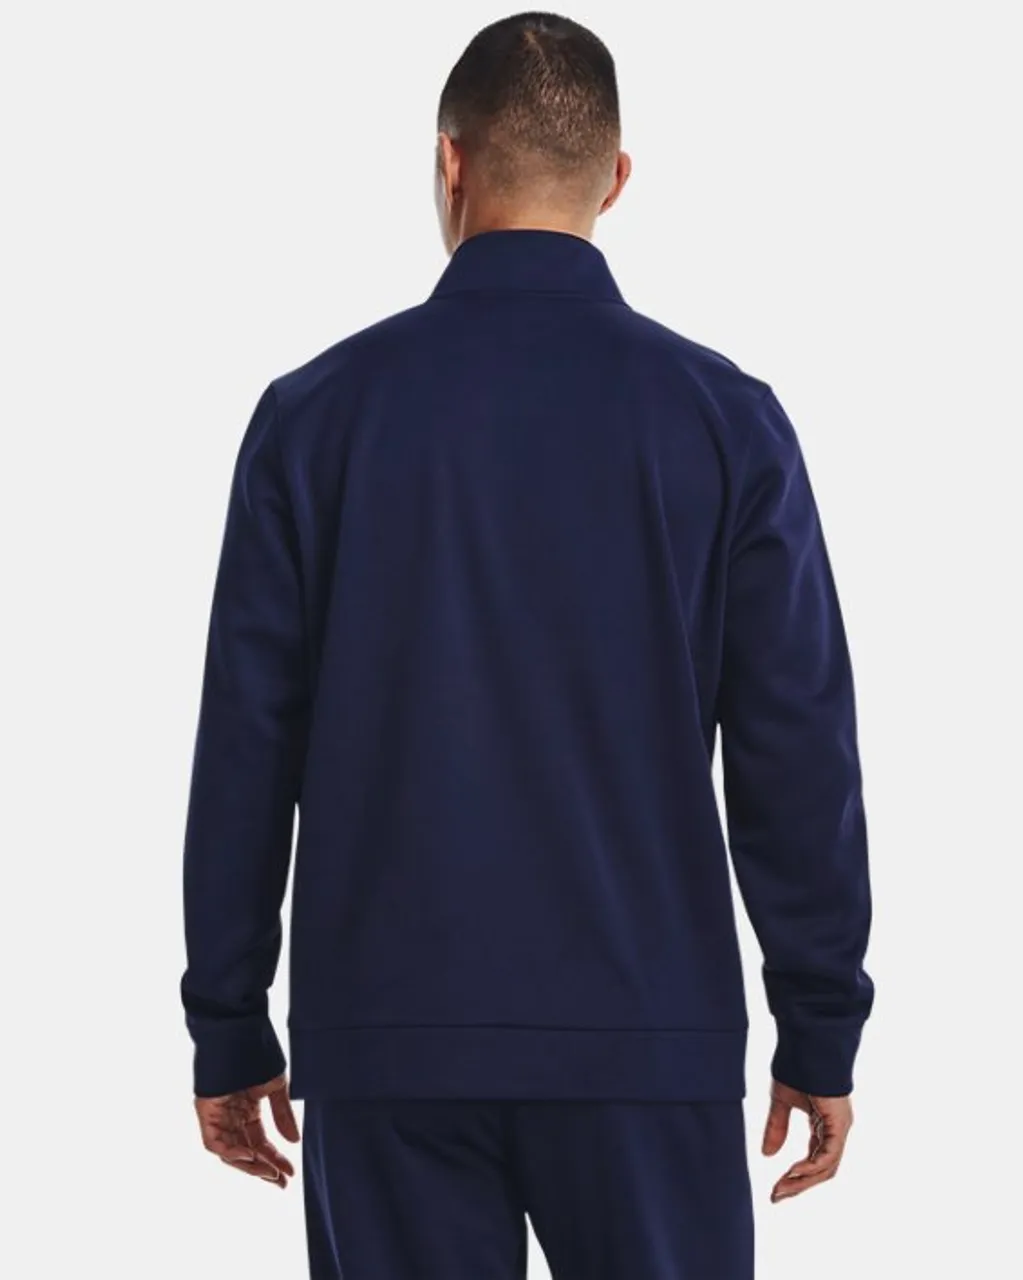 Armour Fleece® Hoodie mit ¼ Zip für Herren Midnight Blaue Marine / Schwarz S